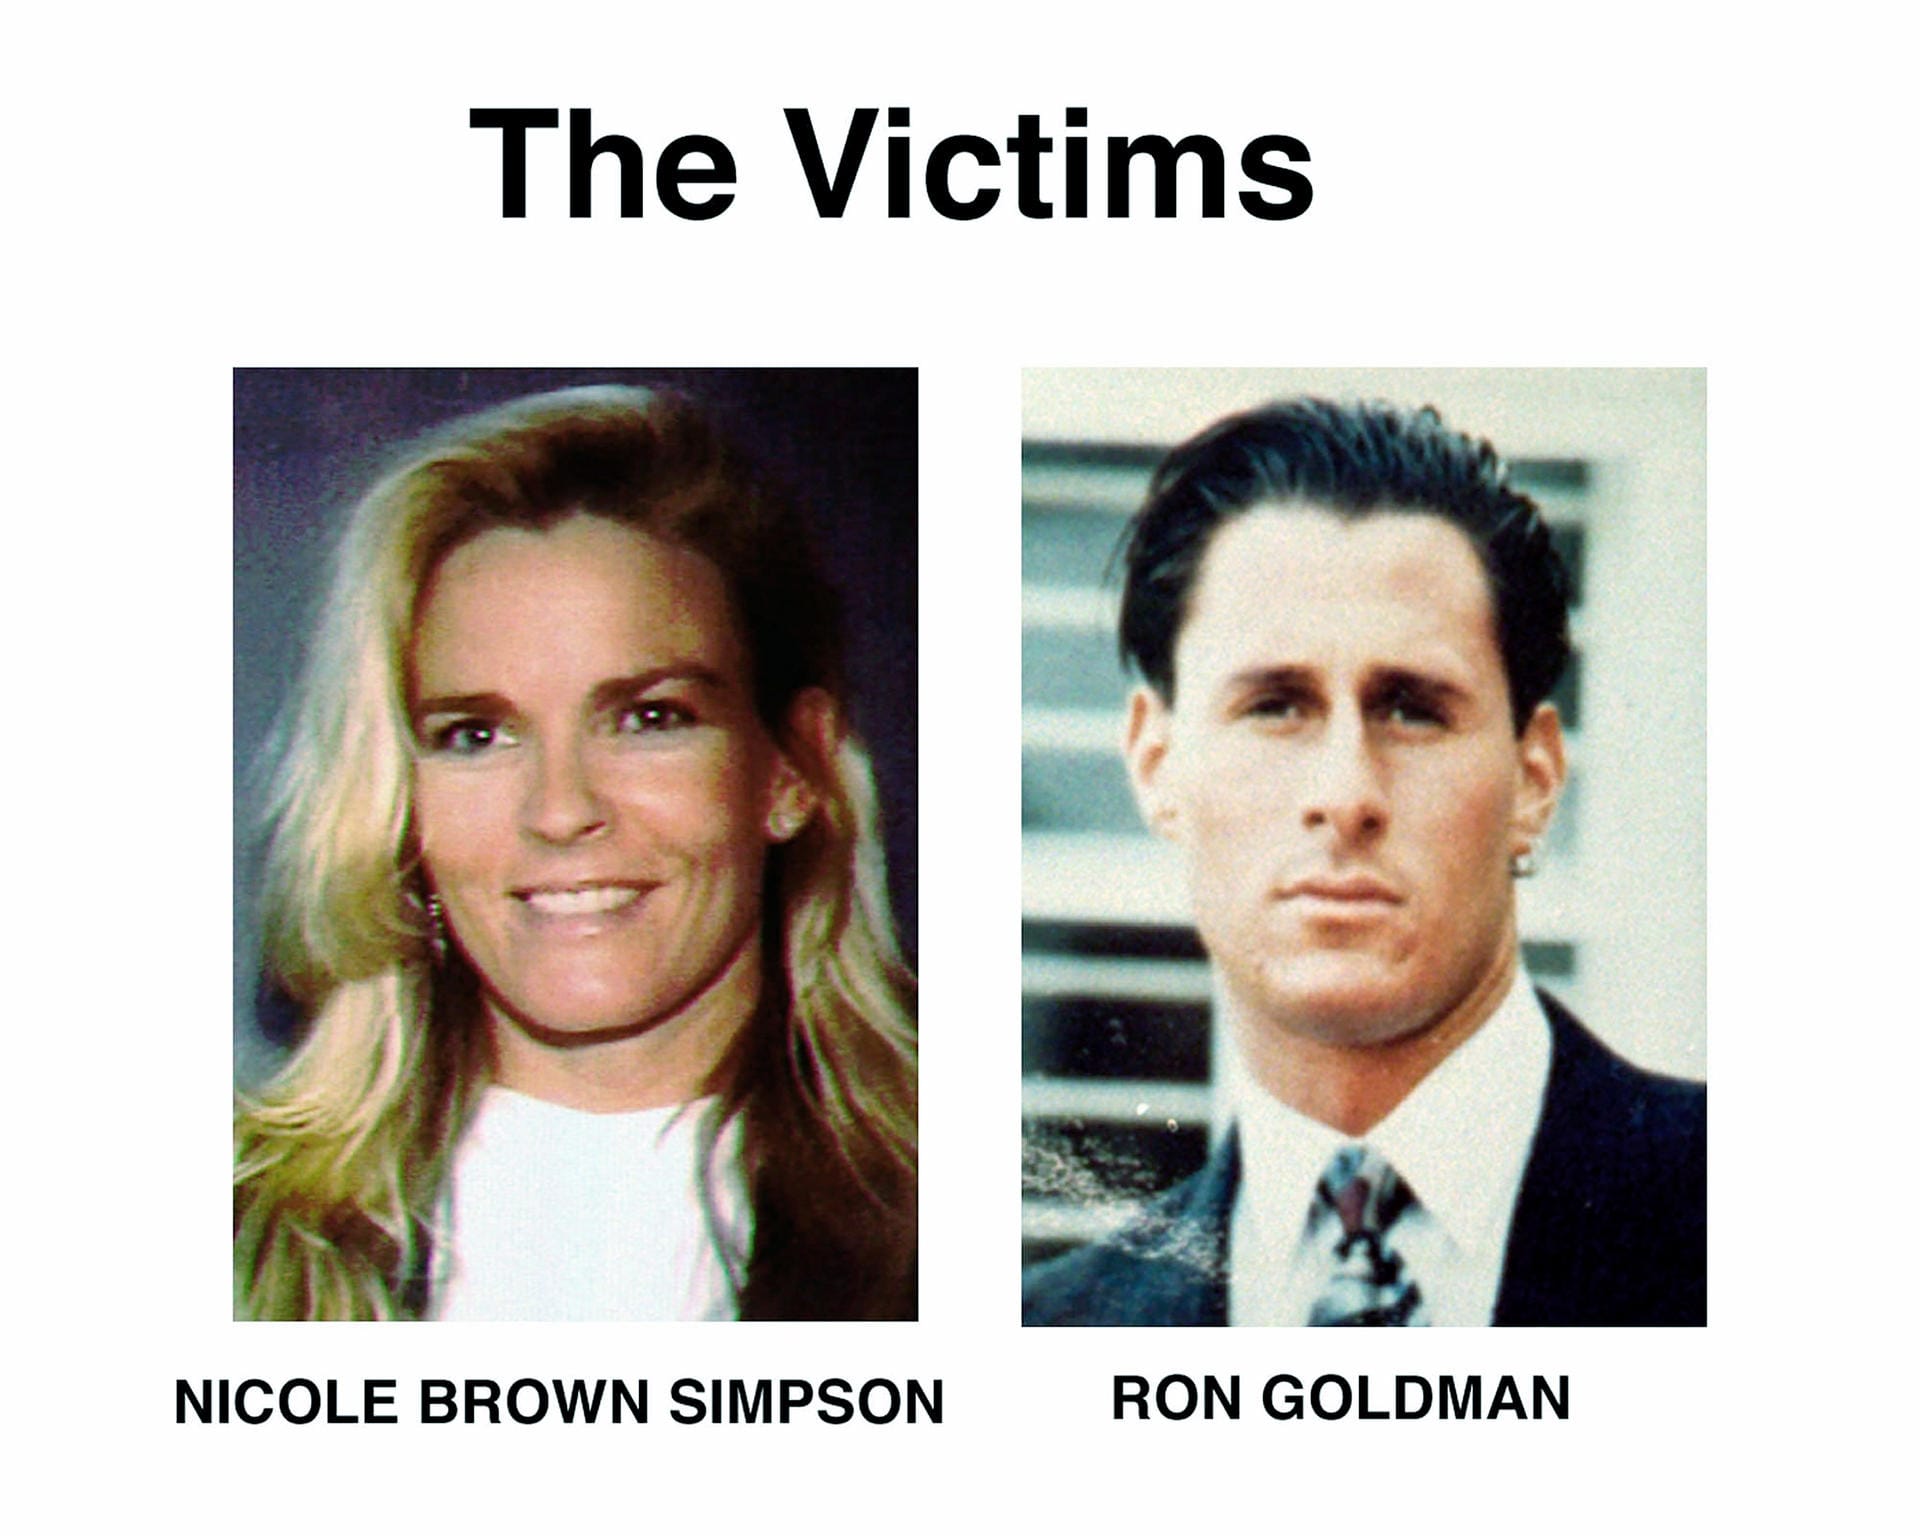 Simpsons Ex-Frau, Nicole Brown Simpson, und ihr Freund Ron Goldman waren damals vor ihrem Haus in LA erstochen aufgefunden worden.